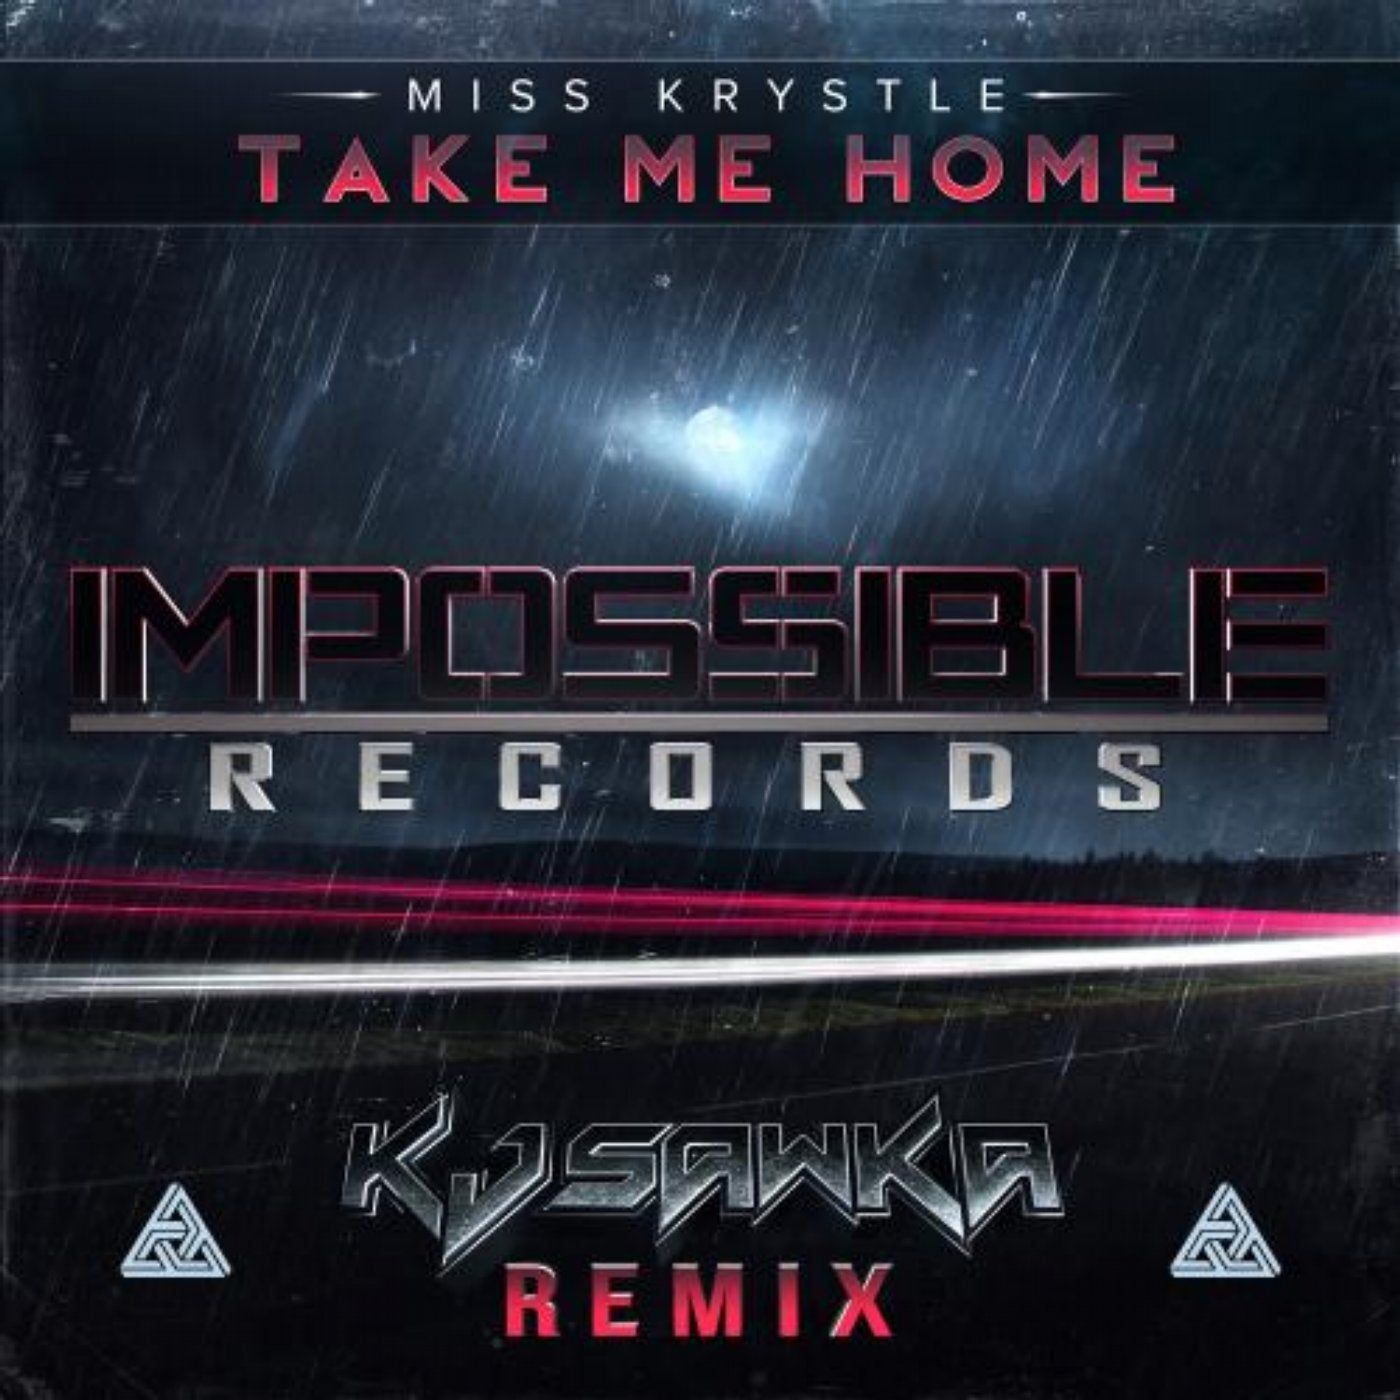 Take Me Home (KJ Sawka Remix)